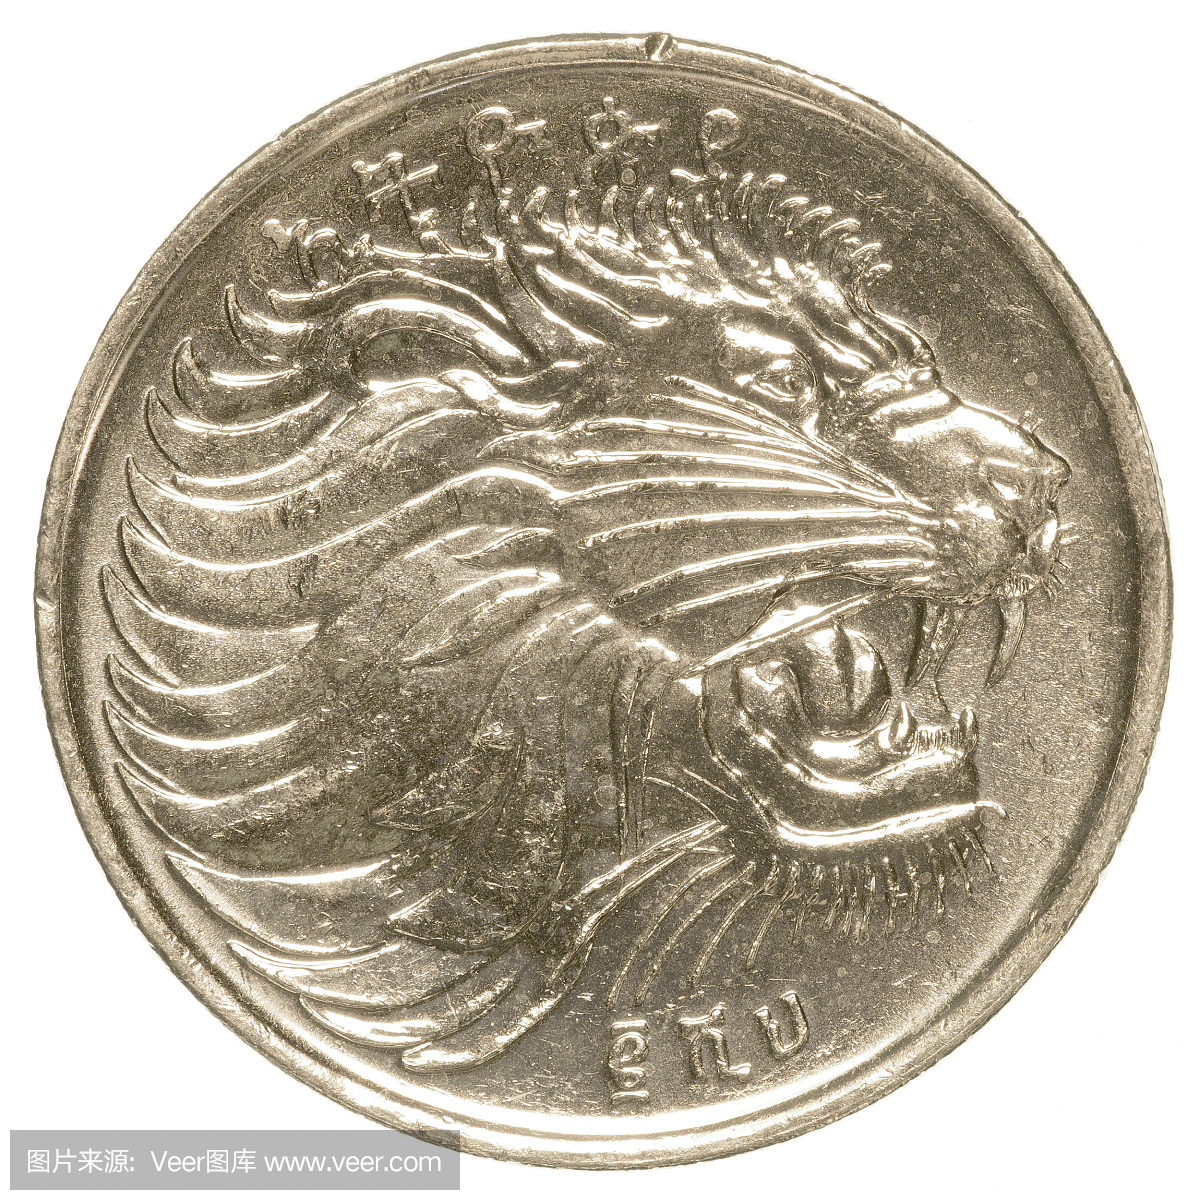 埃塞俄比亚santim硬币